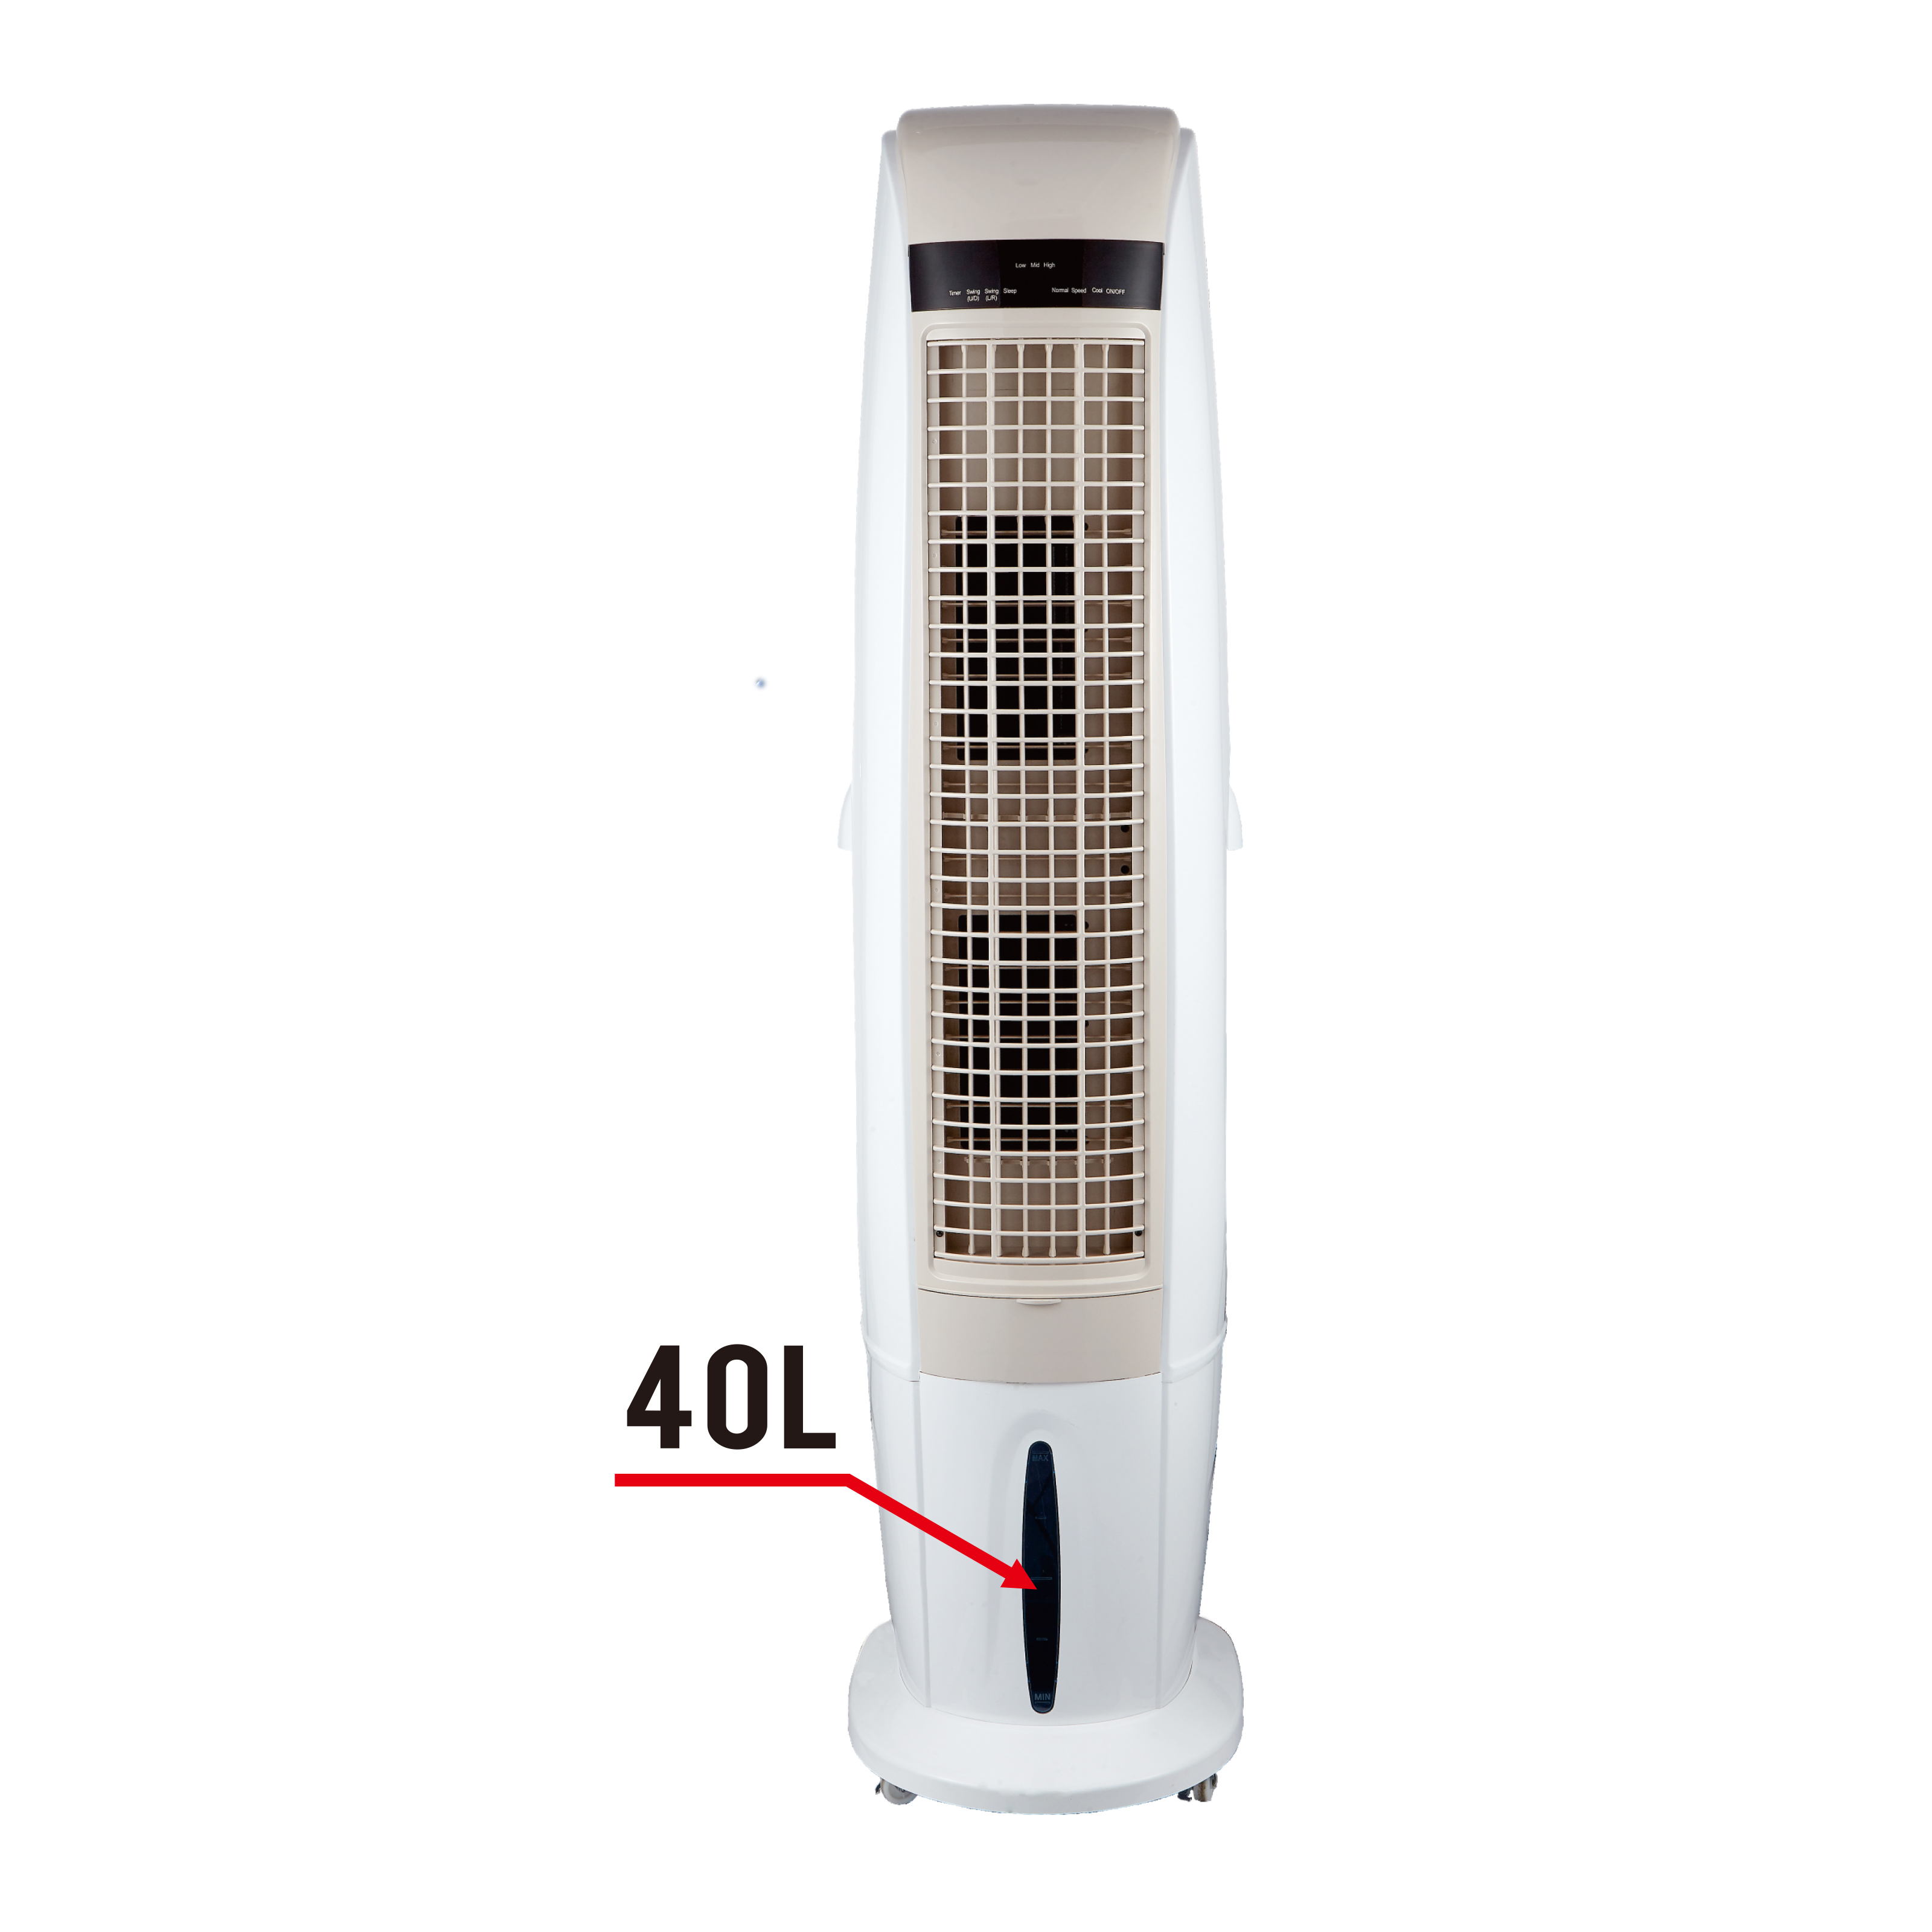 Installation et maintenance faciles du refroidisseur d'air domestique au sol télécommandé: